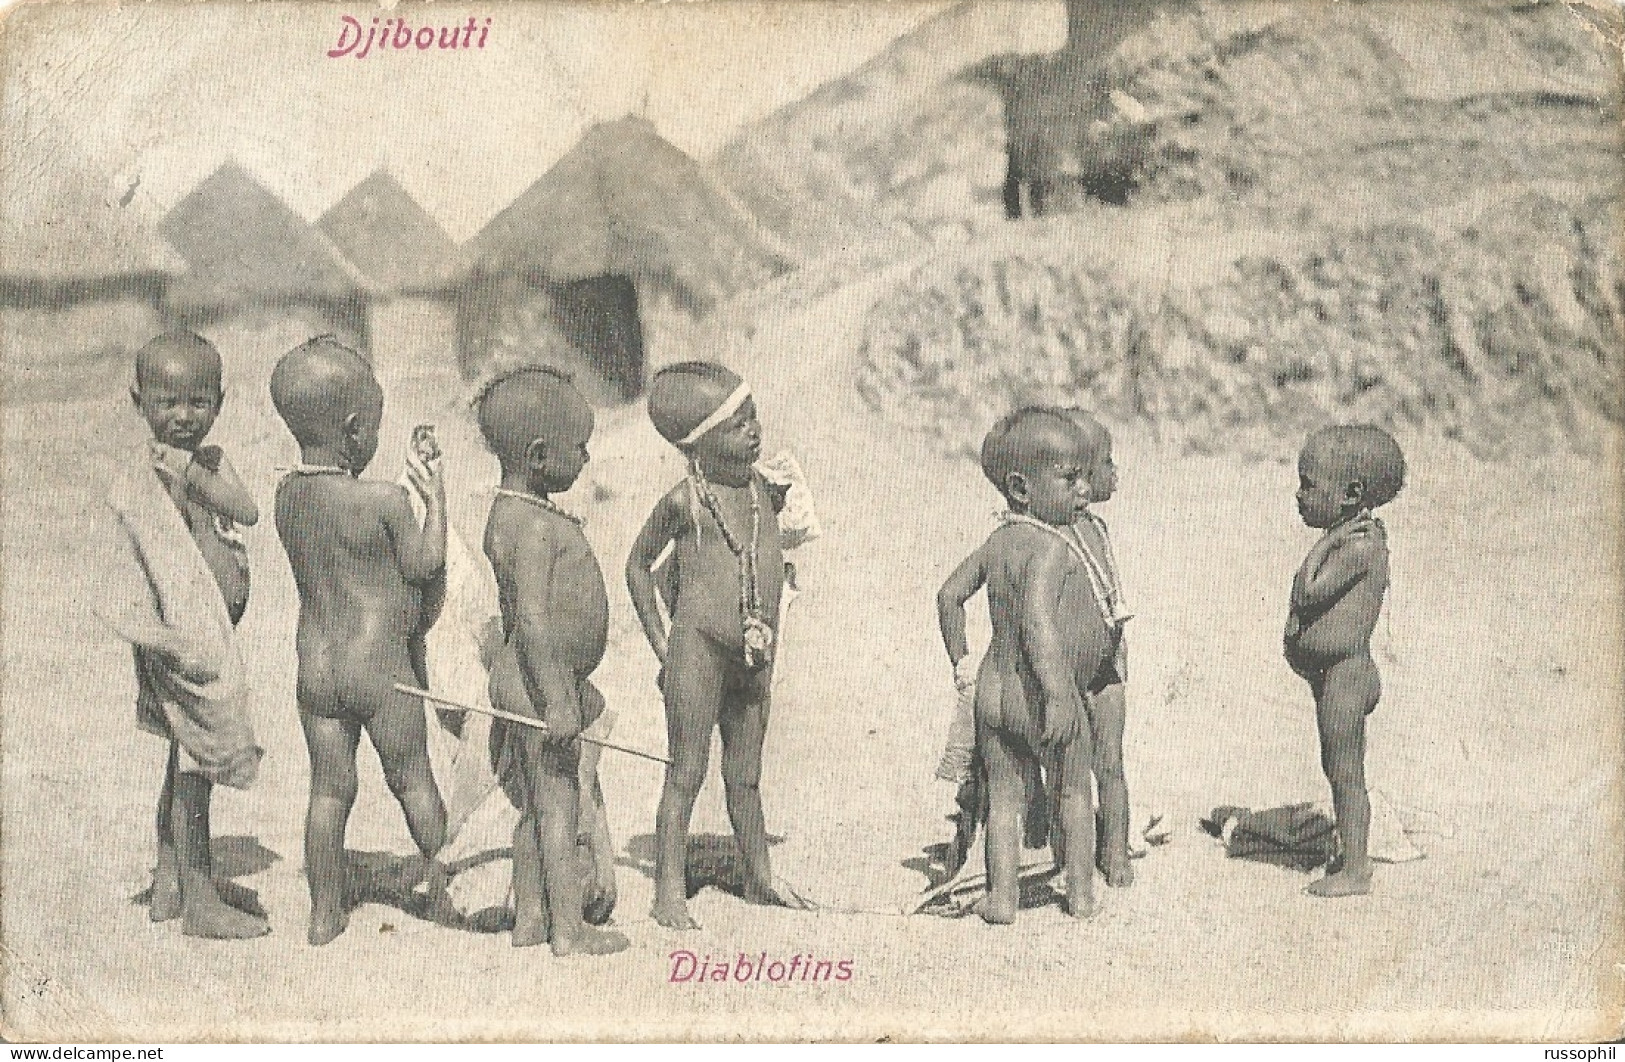 DJIBOUTI - DIABLOTINS - 1904 - África